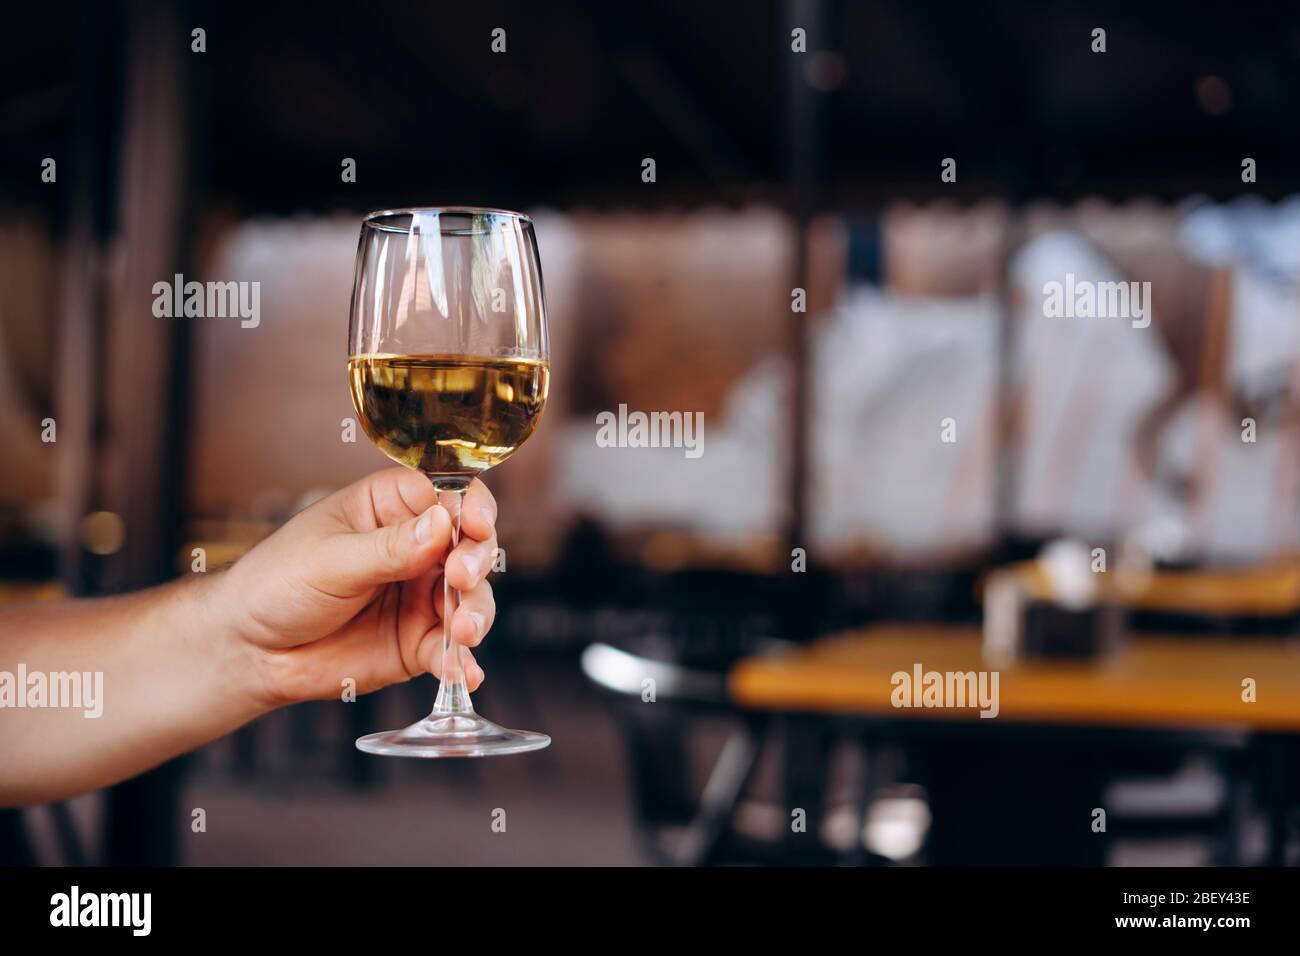 Nahaufnahme der männlichen Hand, die ein Glas Weißwein hält. Glas Weißwein auf dunklem Hintergrund Stockfoto